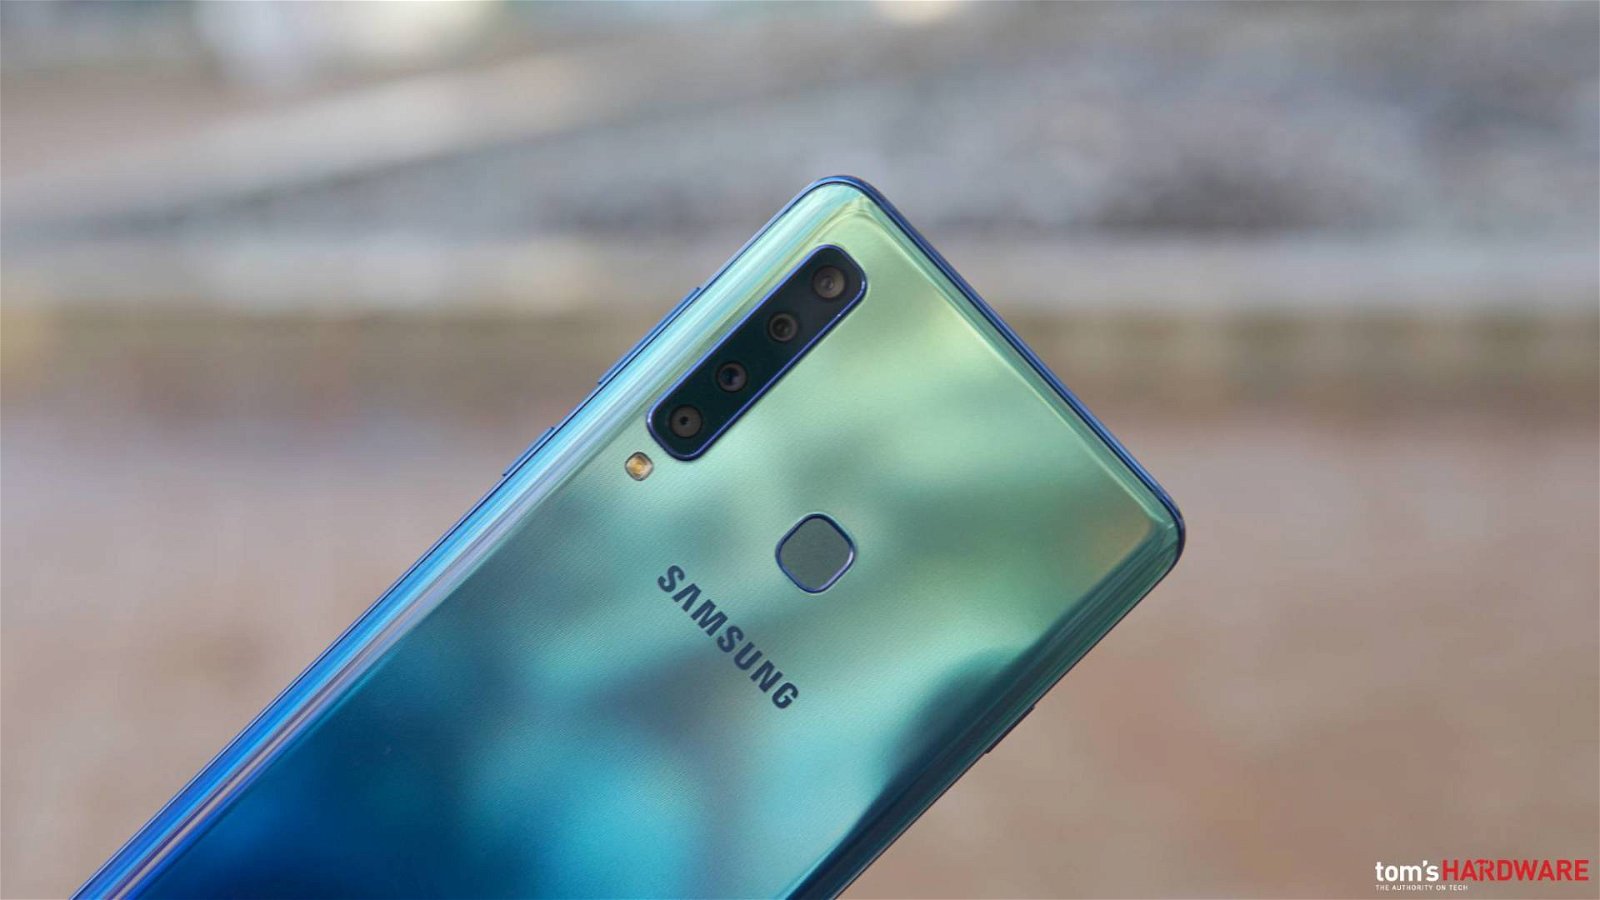 Immagine di Recensione Samsung Galaxy A9 2018: le quattro fotocamere convincono, peccato per il prezzo